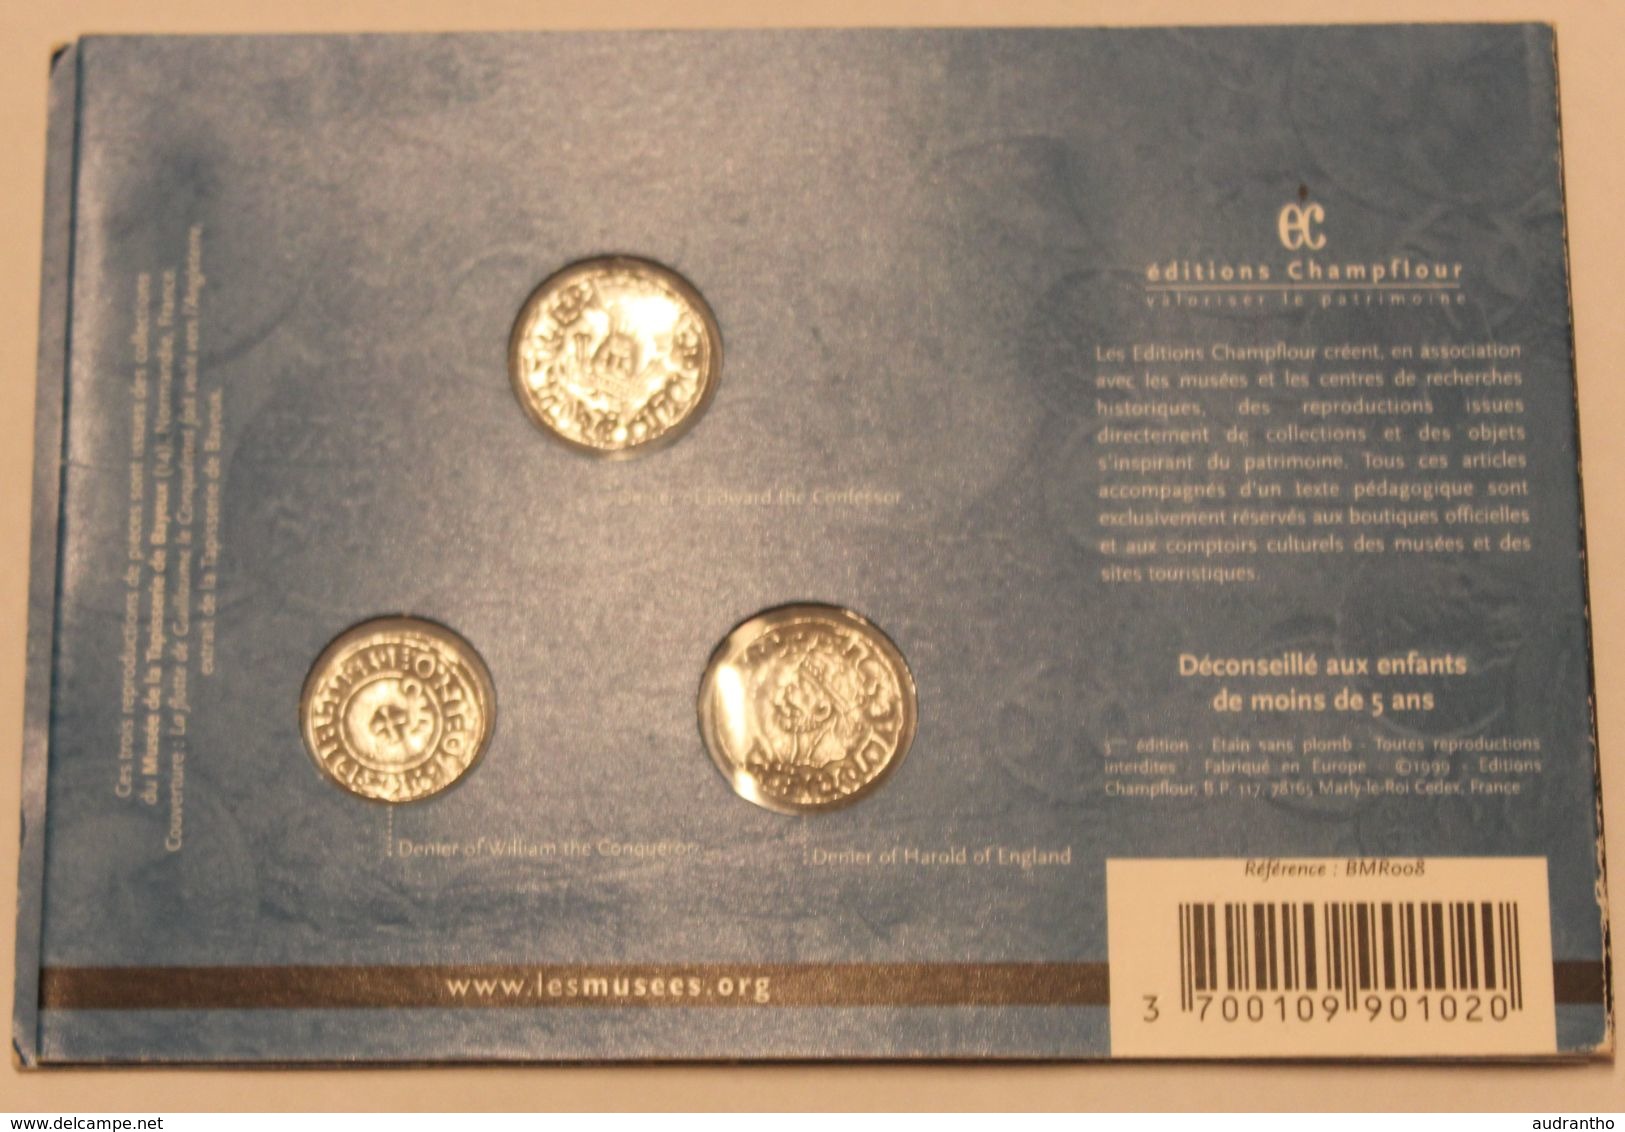 Plaque Reproduction De 3 Monnaies Médiévales Collection Art Et Patrimoine Moyen-âge N°2 éditions Champflour 1999 - Fausses Monnaies